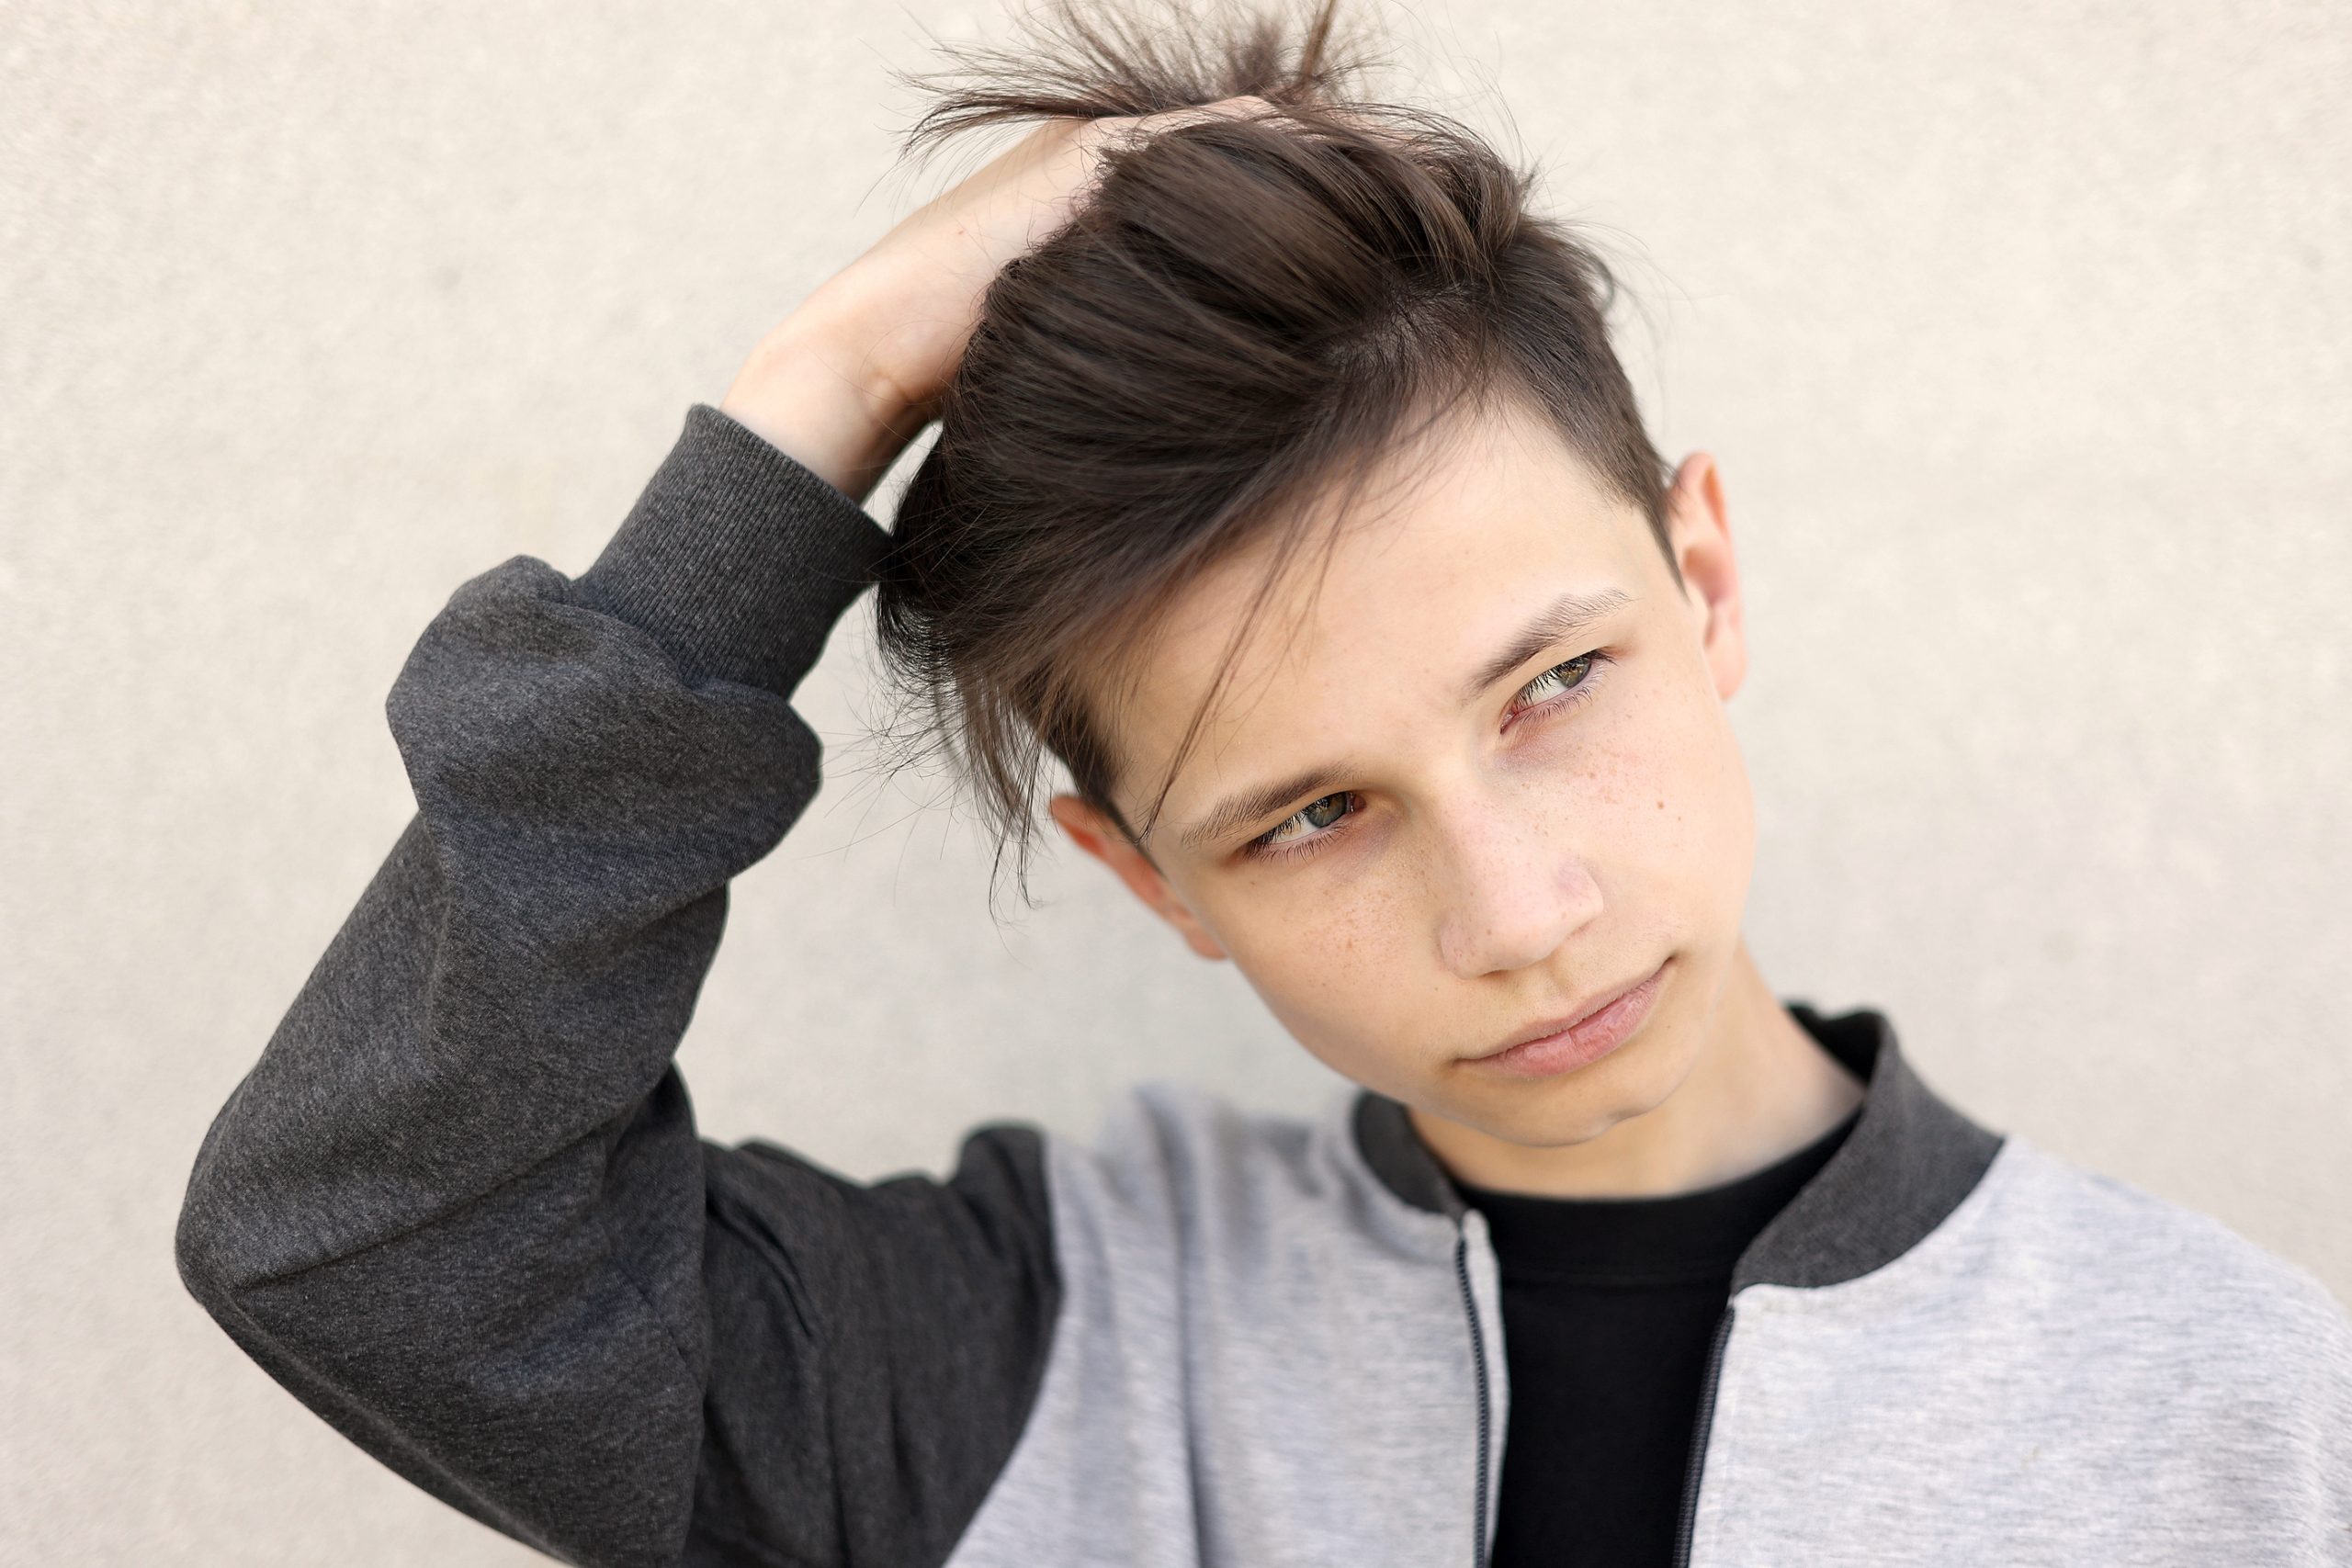 Alerta sanitaria: Brote de tiña en adolescentes por un corte de pelo